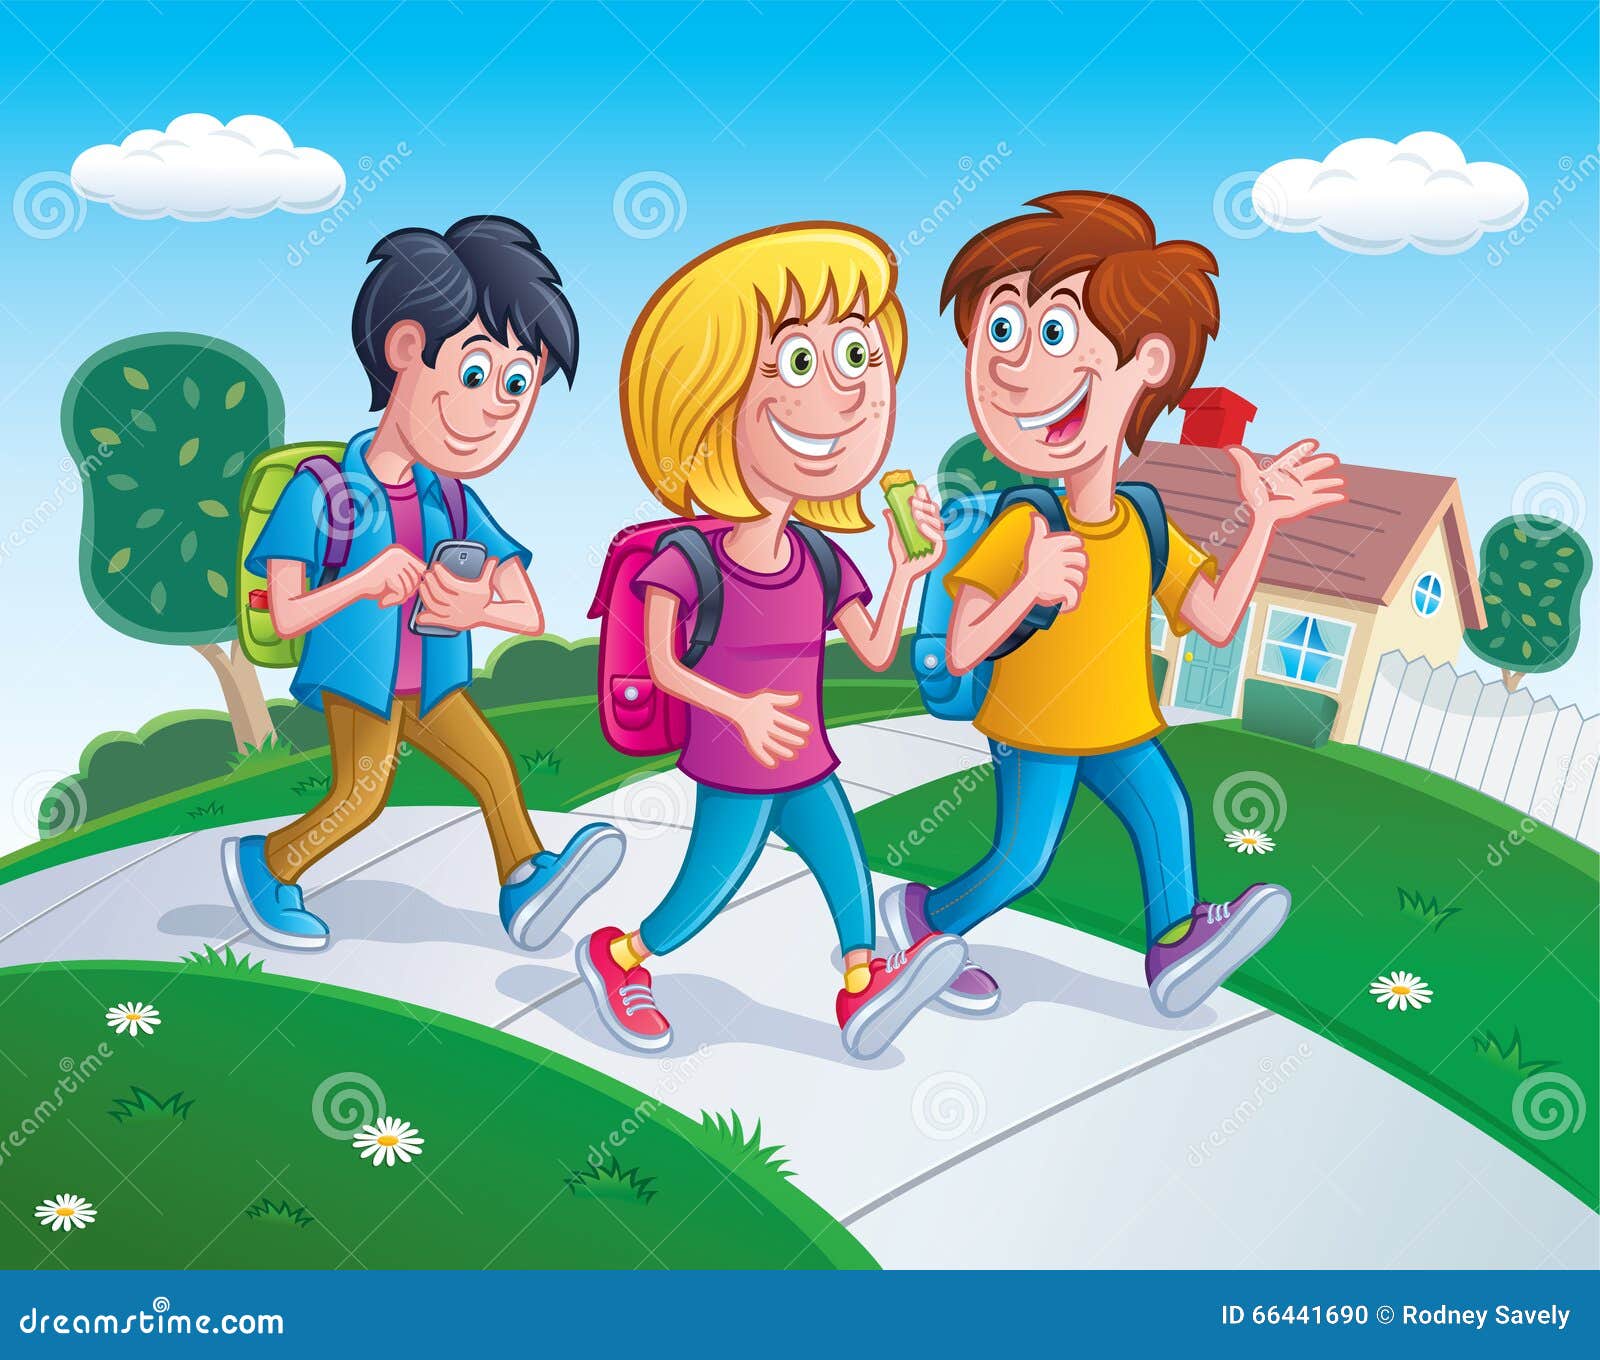 Школа уроки гулять. Ребята идут в школу. Ребенок гуляет с друзьями. Дети на улице иллюстрация. Прогулка детей на улице.